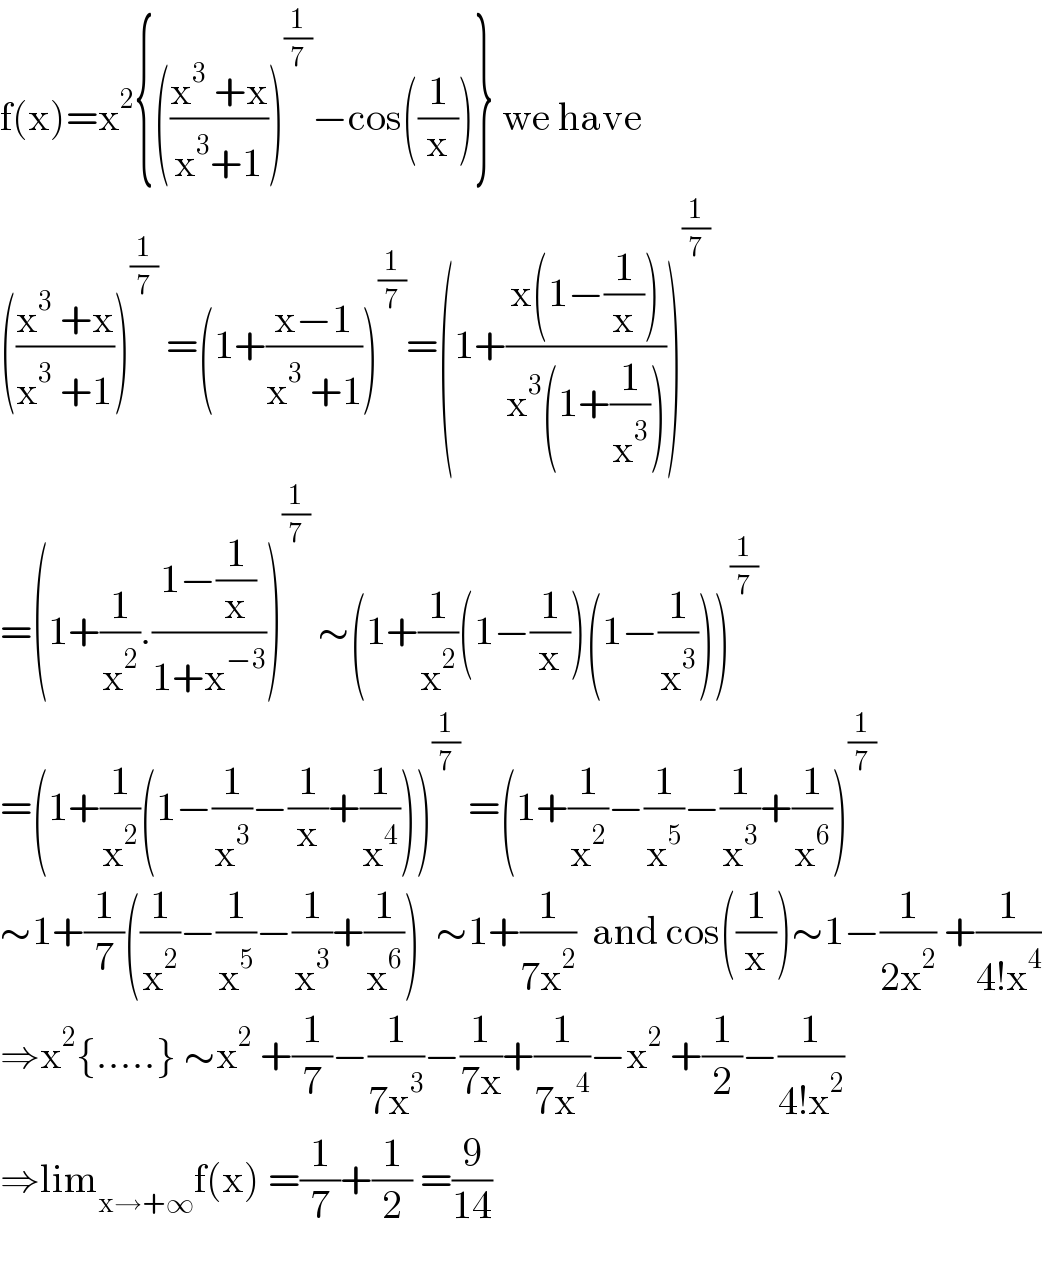 f(x)=x^2 {(((x^3  +x)/(x^3 +1)))^(1/7) −cos((1/x))} we have  (((x^3  +x)/(x^3  +1)))^(1/7)  =(1+((x−1)/(x^3  +1)))^(1/7) =(1+((x(1−(1/x)))/(x^3 (1+(1/x^3 )))))^(1/7)   =(1+(1/x^2 ).((1−(1/x))/(1+x^(−3) )))^(1/7)  ∼(1+(1/x^2 )(1−(1/x))(1−(1/x^3 )))^(1/7)   =(1+(1/x^2 )(1−(1/x^3 )−(1/x)+(1/x^4 )))^(1/7)  =(1+(1/x^2 )−(1/x^5 )−(1/x^3 )+(1/x^6 ))^(1/7)   ∼1+(1/7)((1/x^2 )−(1/x^5 )−(1/x^3 )+(1/x^6 ))  ∼1+(1/(7x^2 ))  and cos((1/x))∼1−(1/(2x^2 )) +(1/(4!x^4 ))  ⇒x^2 {.....} ∼x^2  +(1/7)−(1/(7x^3 ))−(1/(7x))+(1/(7x^4 ))−x^2  +(1/2)−(1/(4!x^2 ))  ⇒lim_(x→+∞) f(x) =(1/7)+(1/2) =(9/(14))    